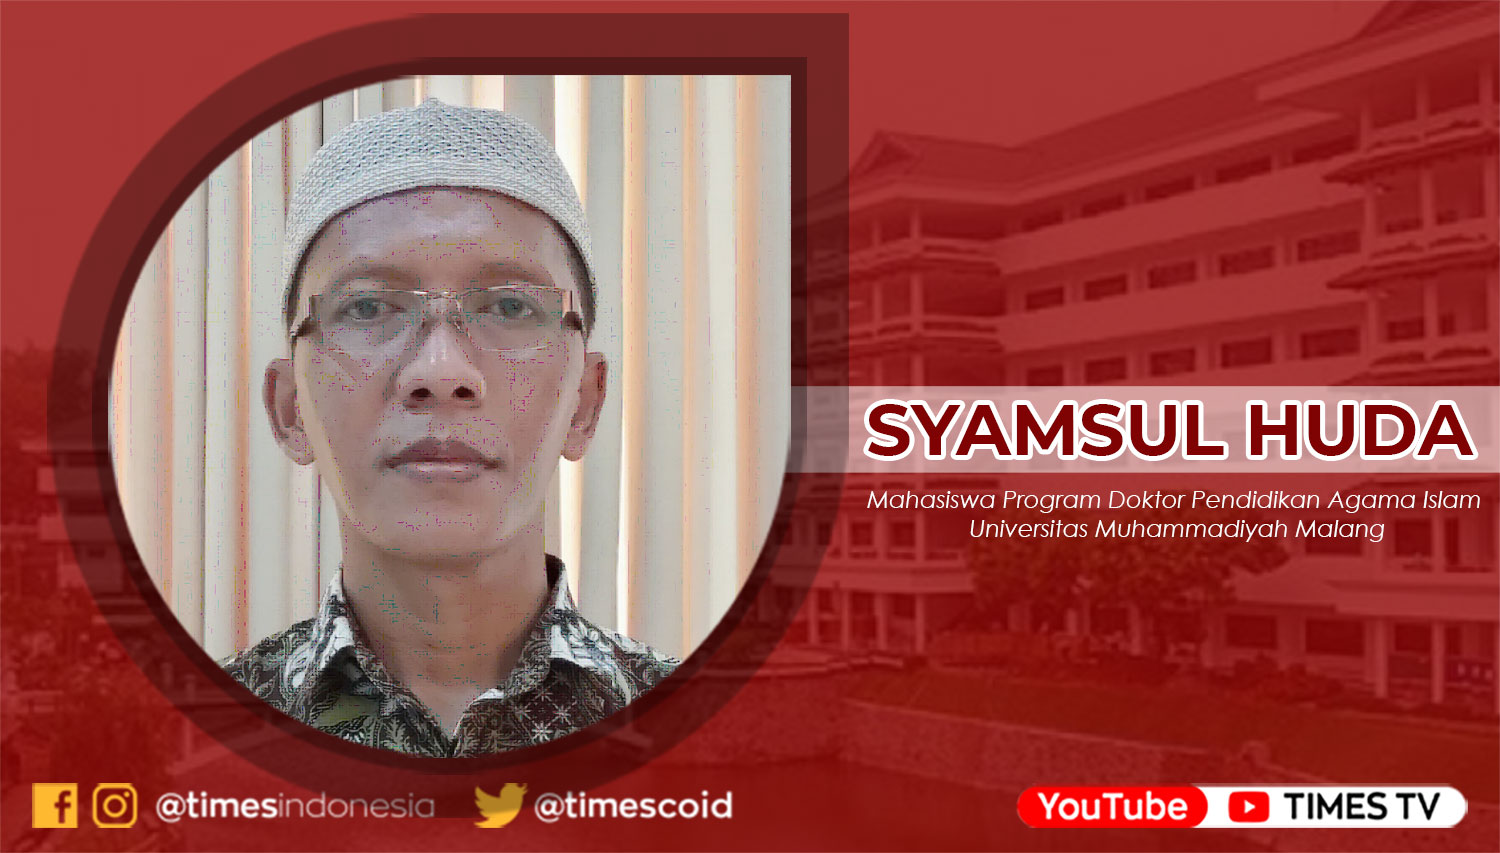 Syamsul Huda, Mahasiswa Program Doktor Pendidikan Agama Islam Universitas Muhammadiyah Malang.